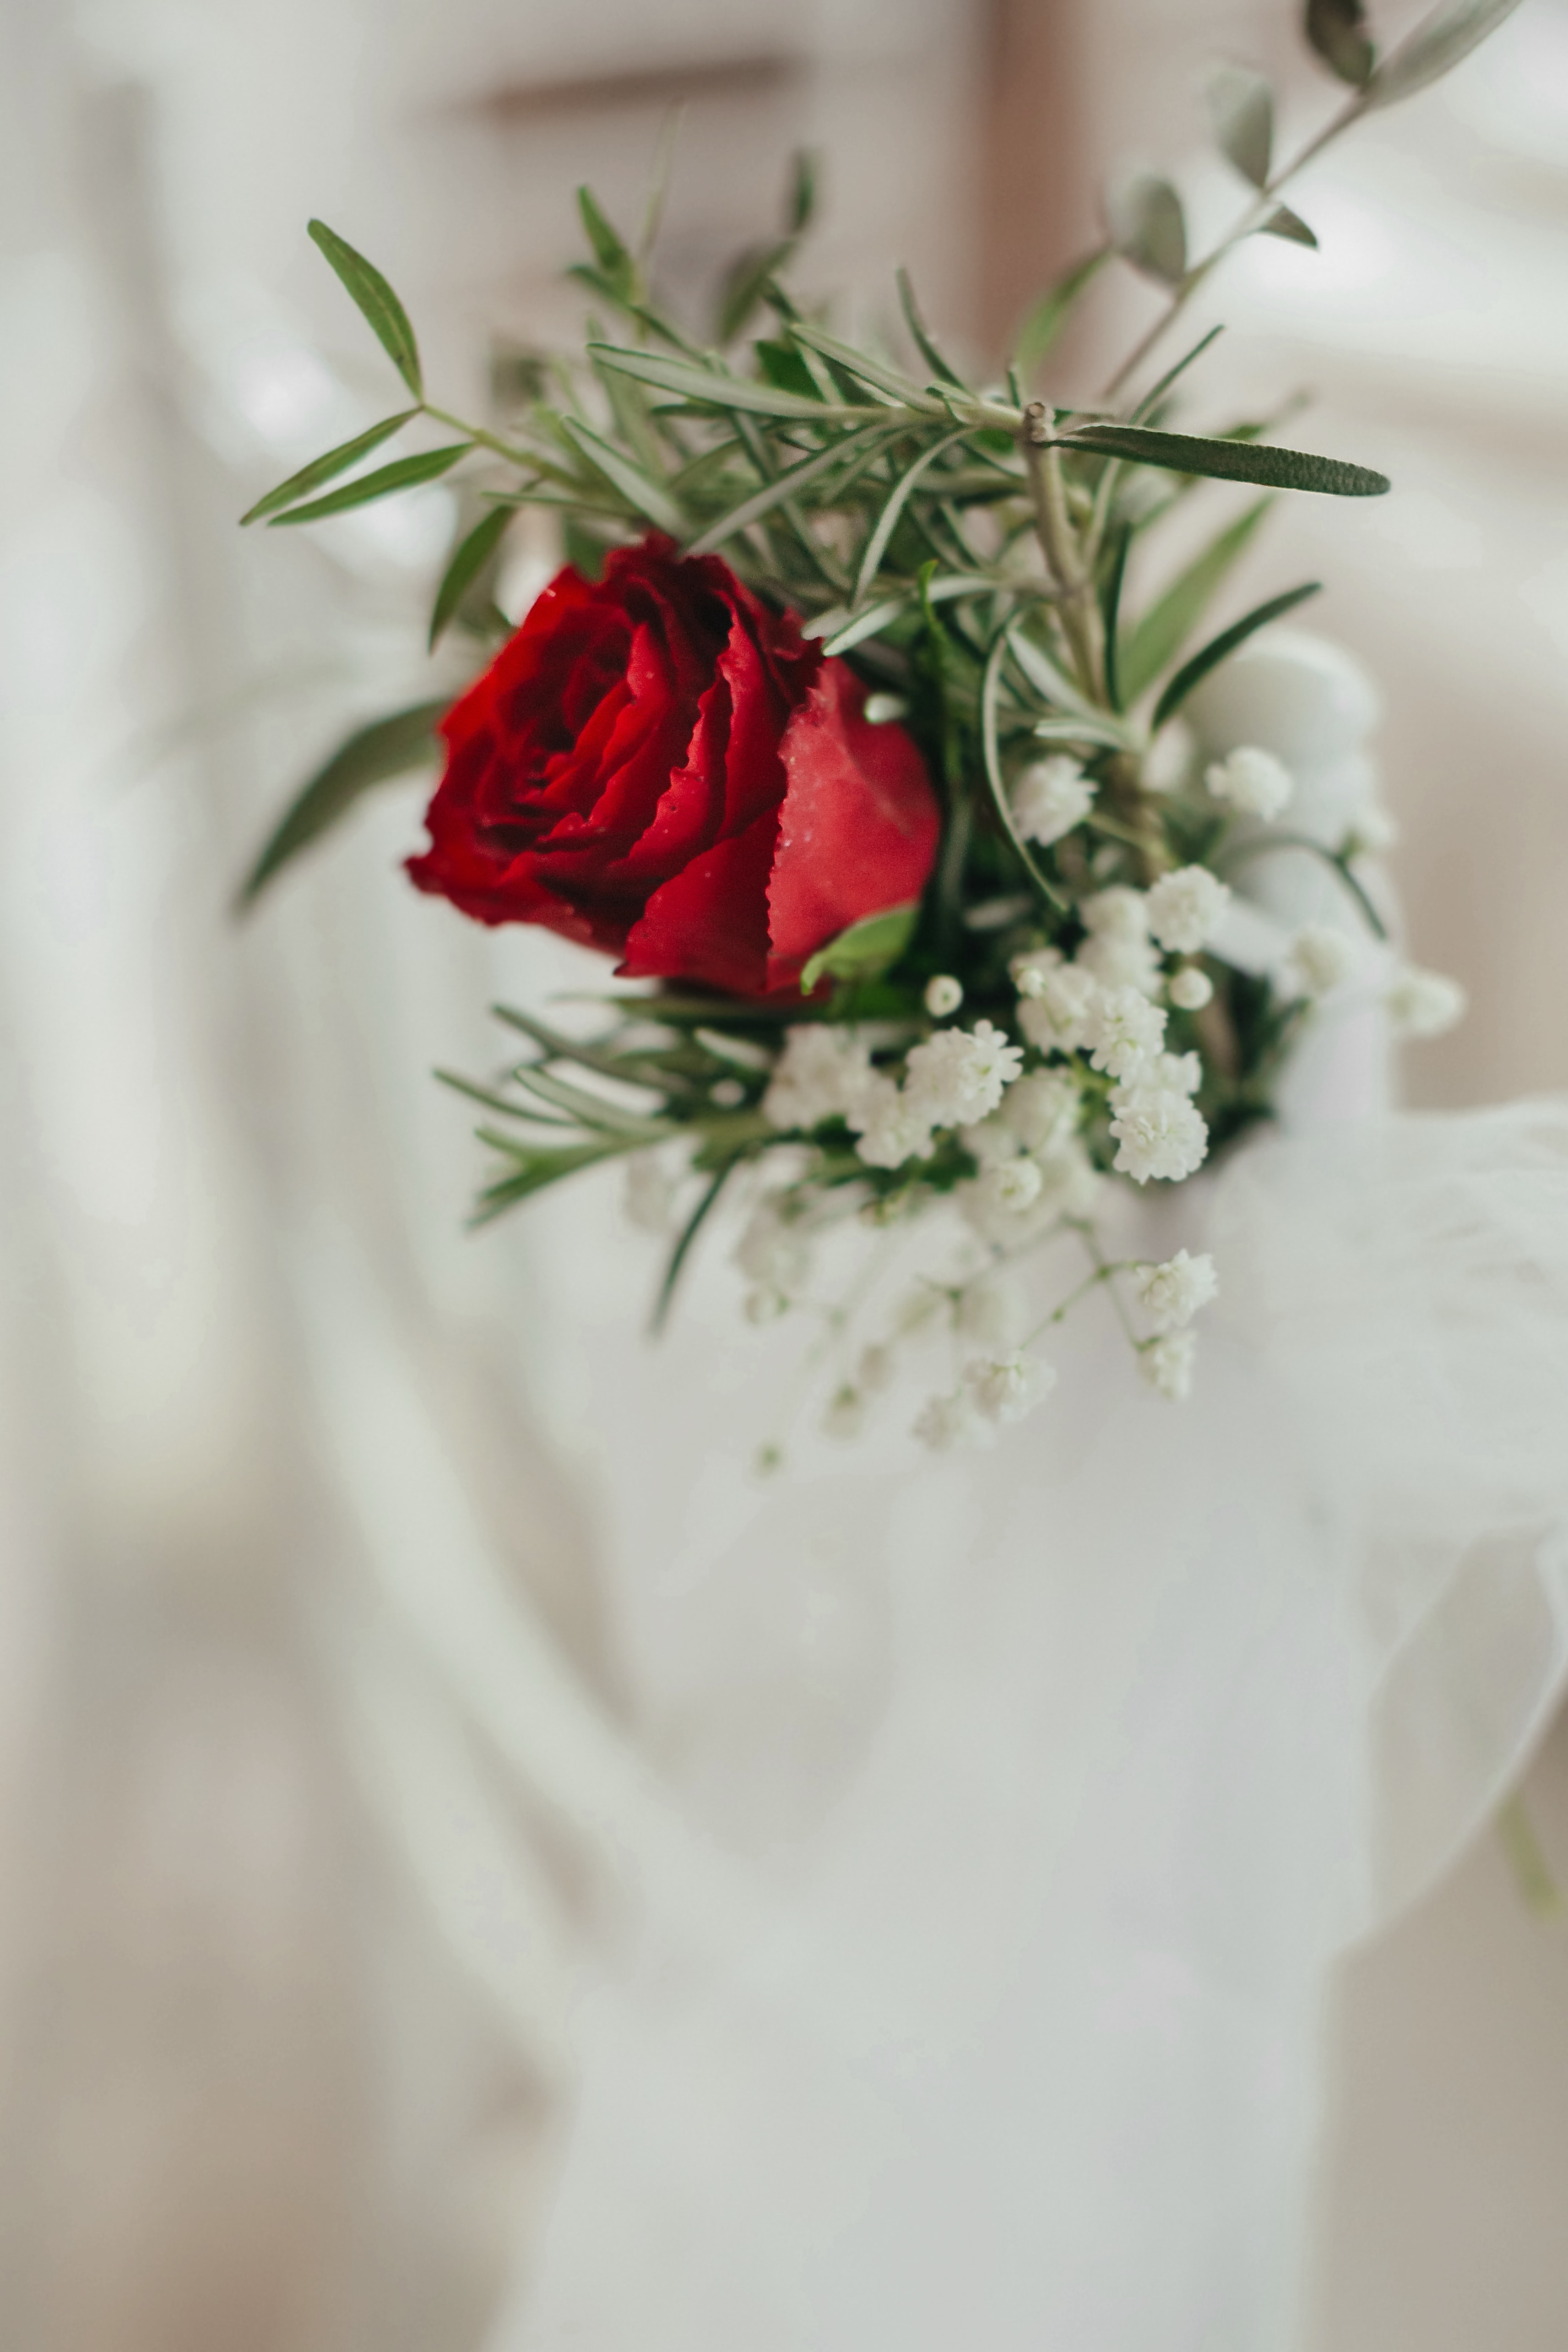 フリー写真画像 花束 赤 ミニマリズム ミニチュア エレガントです ローズ 結婚式 自然 花 クリスマス